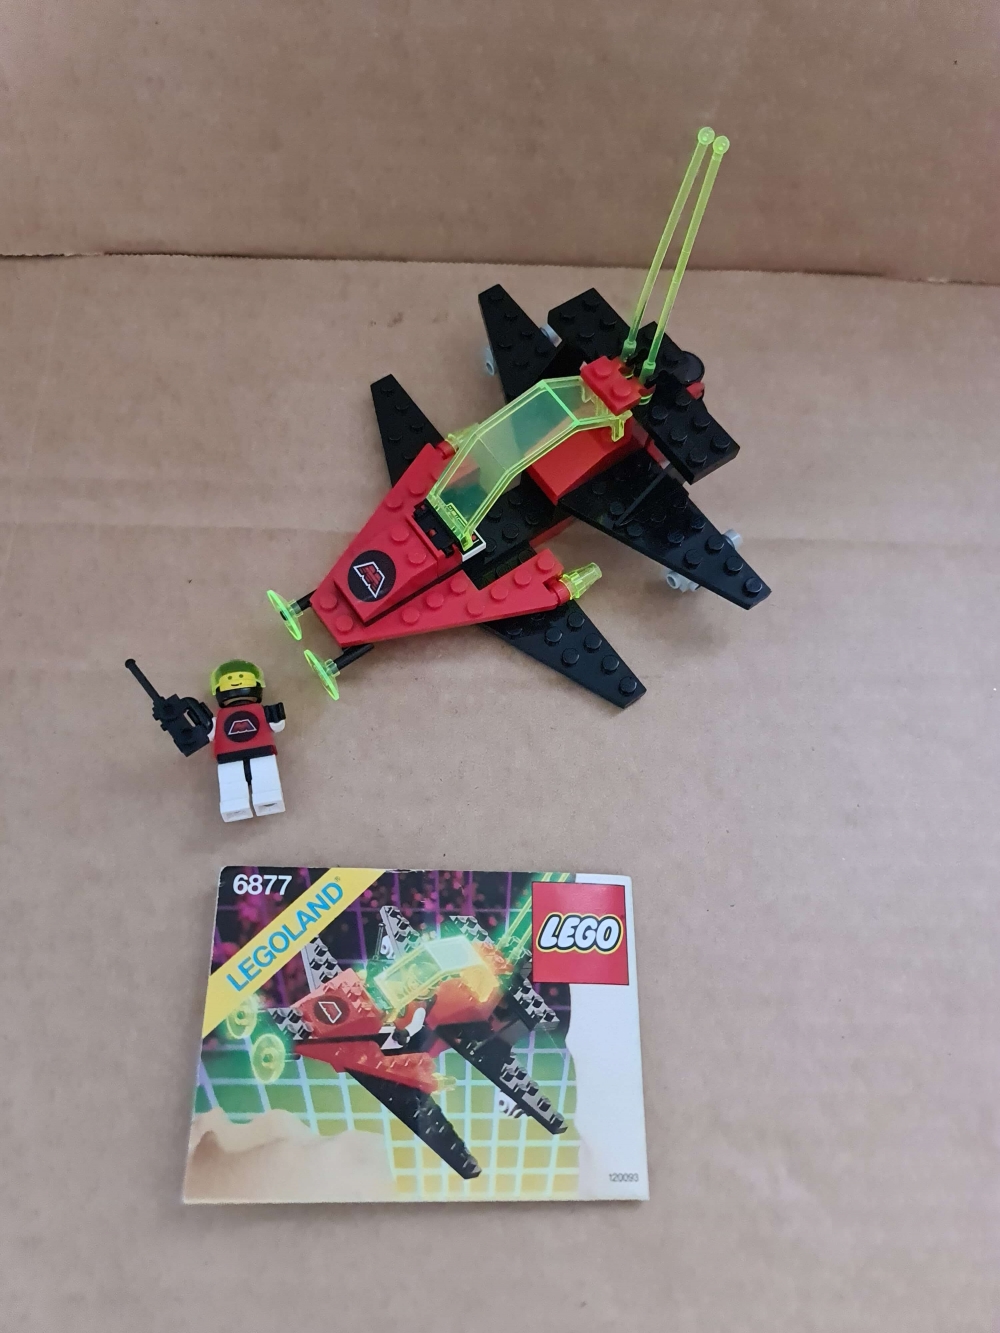 Sett 6877 fra Lego Space : M:Tron serien
Pent sett. Komplett med manual.